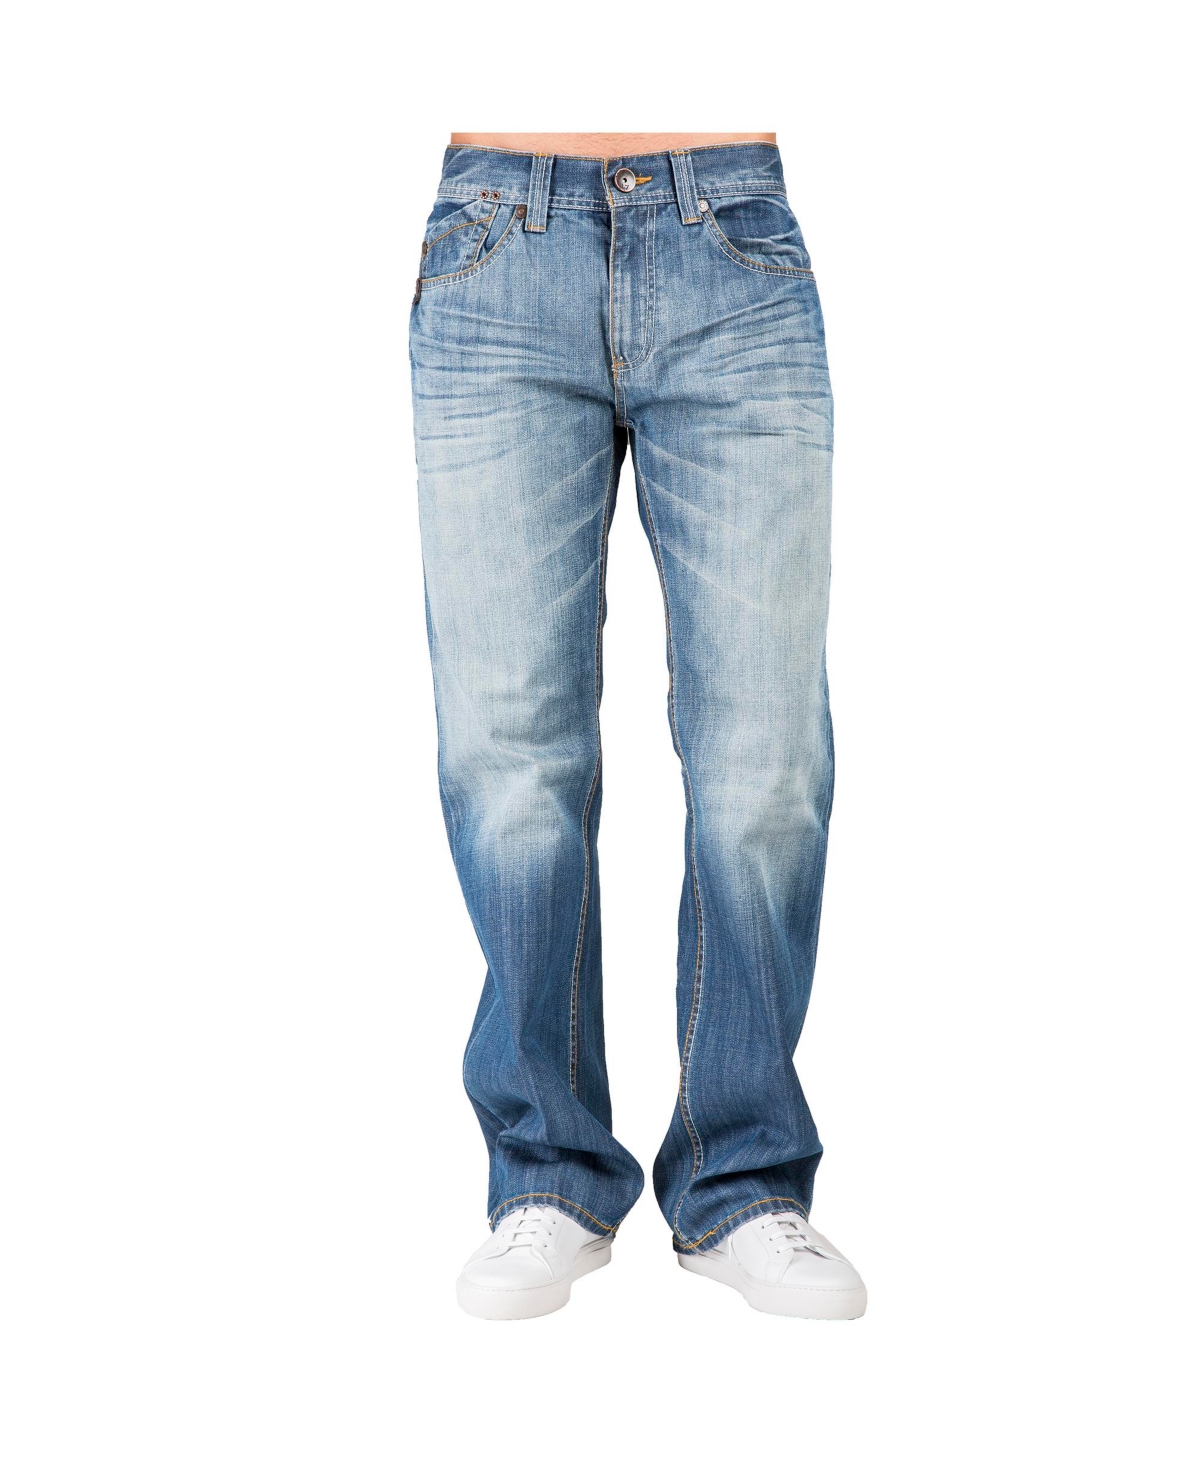 Men's Relaxed-Fit Boot cut Premium Denim Jeans - Blue boy